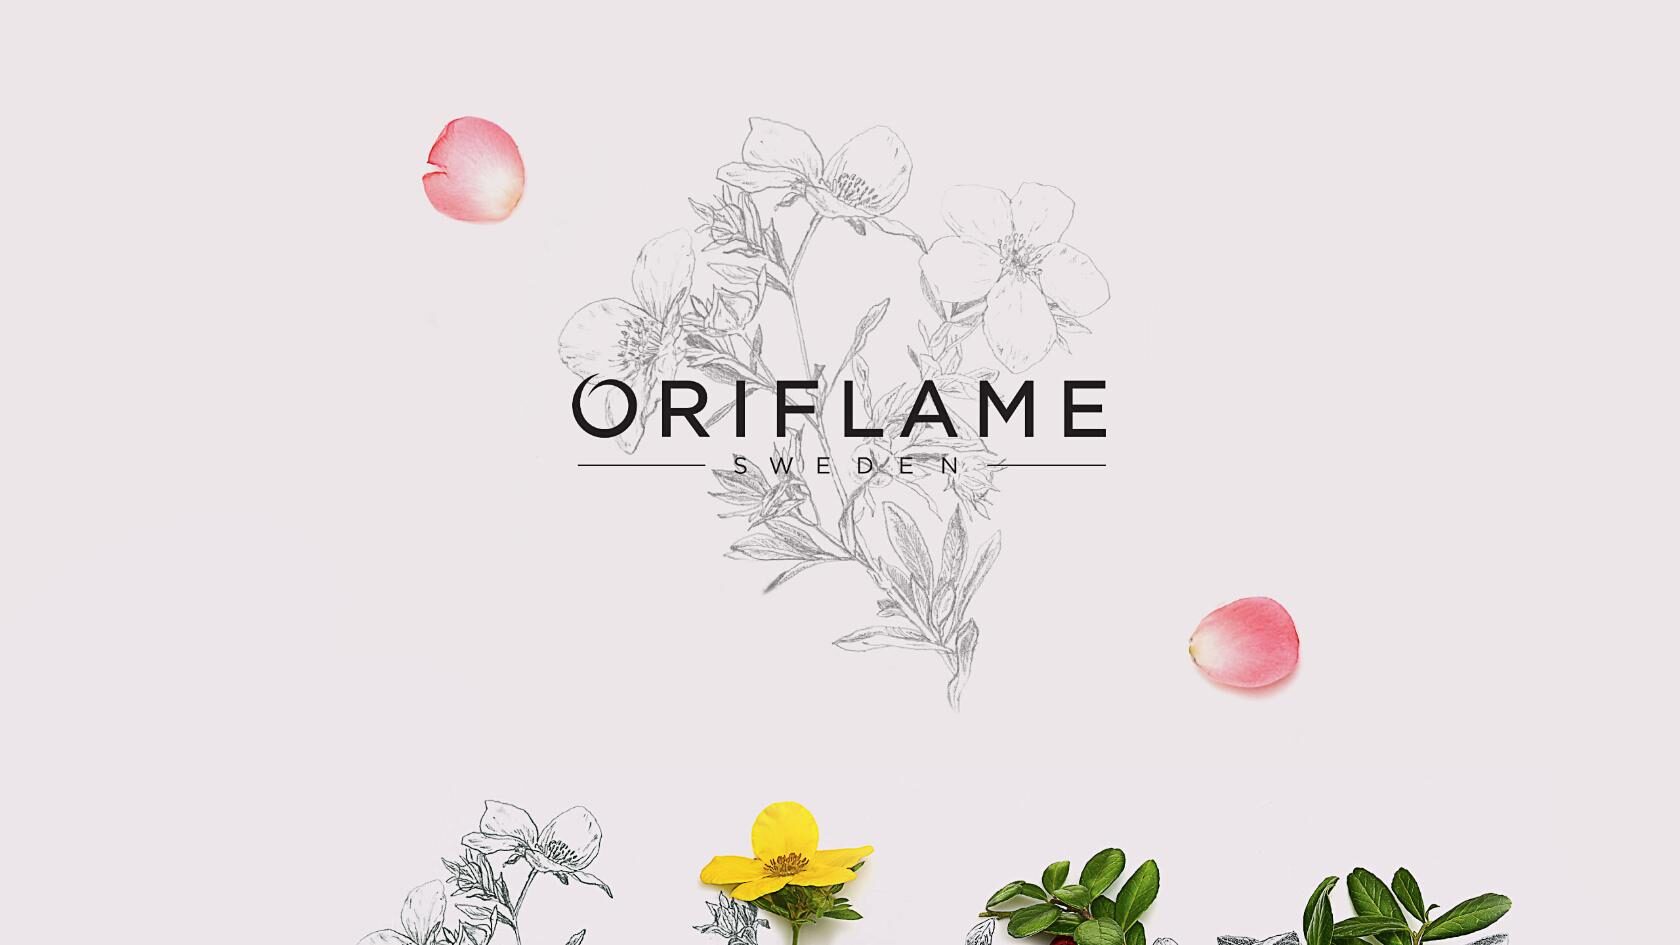 Логотип группы Oriflame - Красота и здоровье